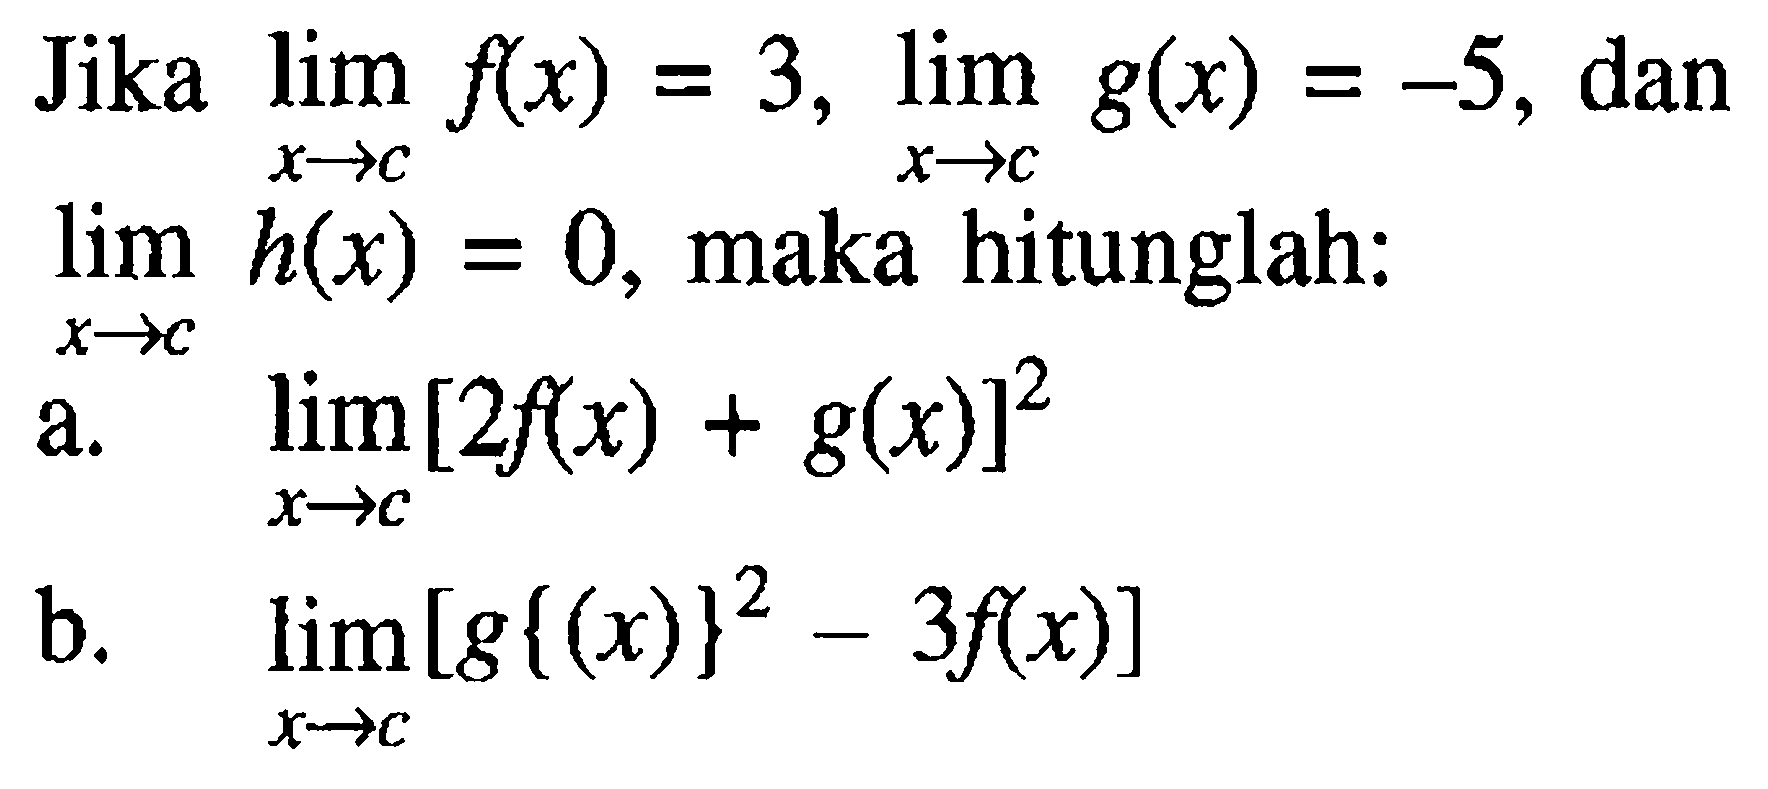 Jika lim x->c f(x)=3, lim x->c g(x)=-5, dan lim x->c h(x)=0, maka hitunglah: a. lim x->c [2f(x)+g(x)]^2 b. lim x->c [g{(x)}^2-3f(x)]